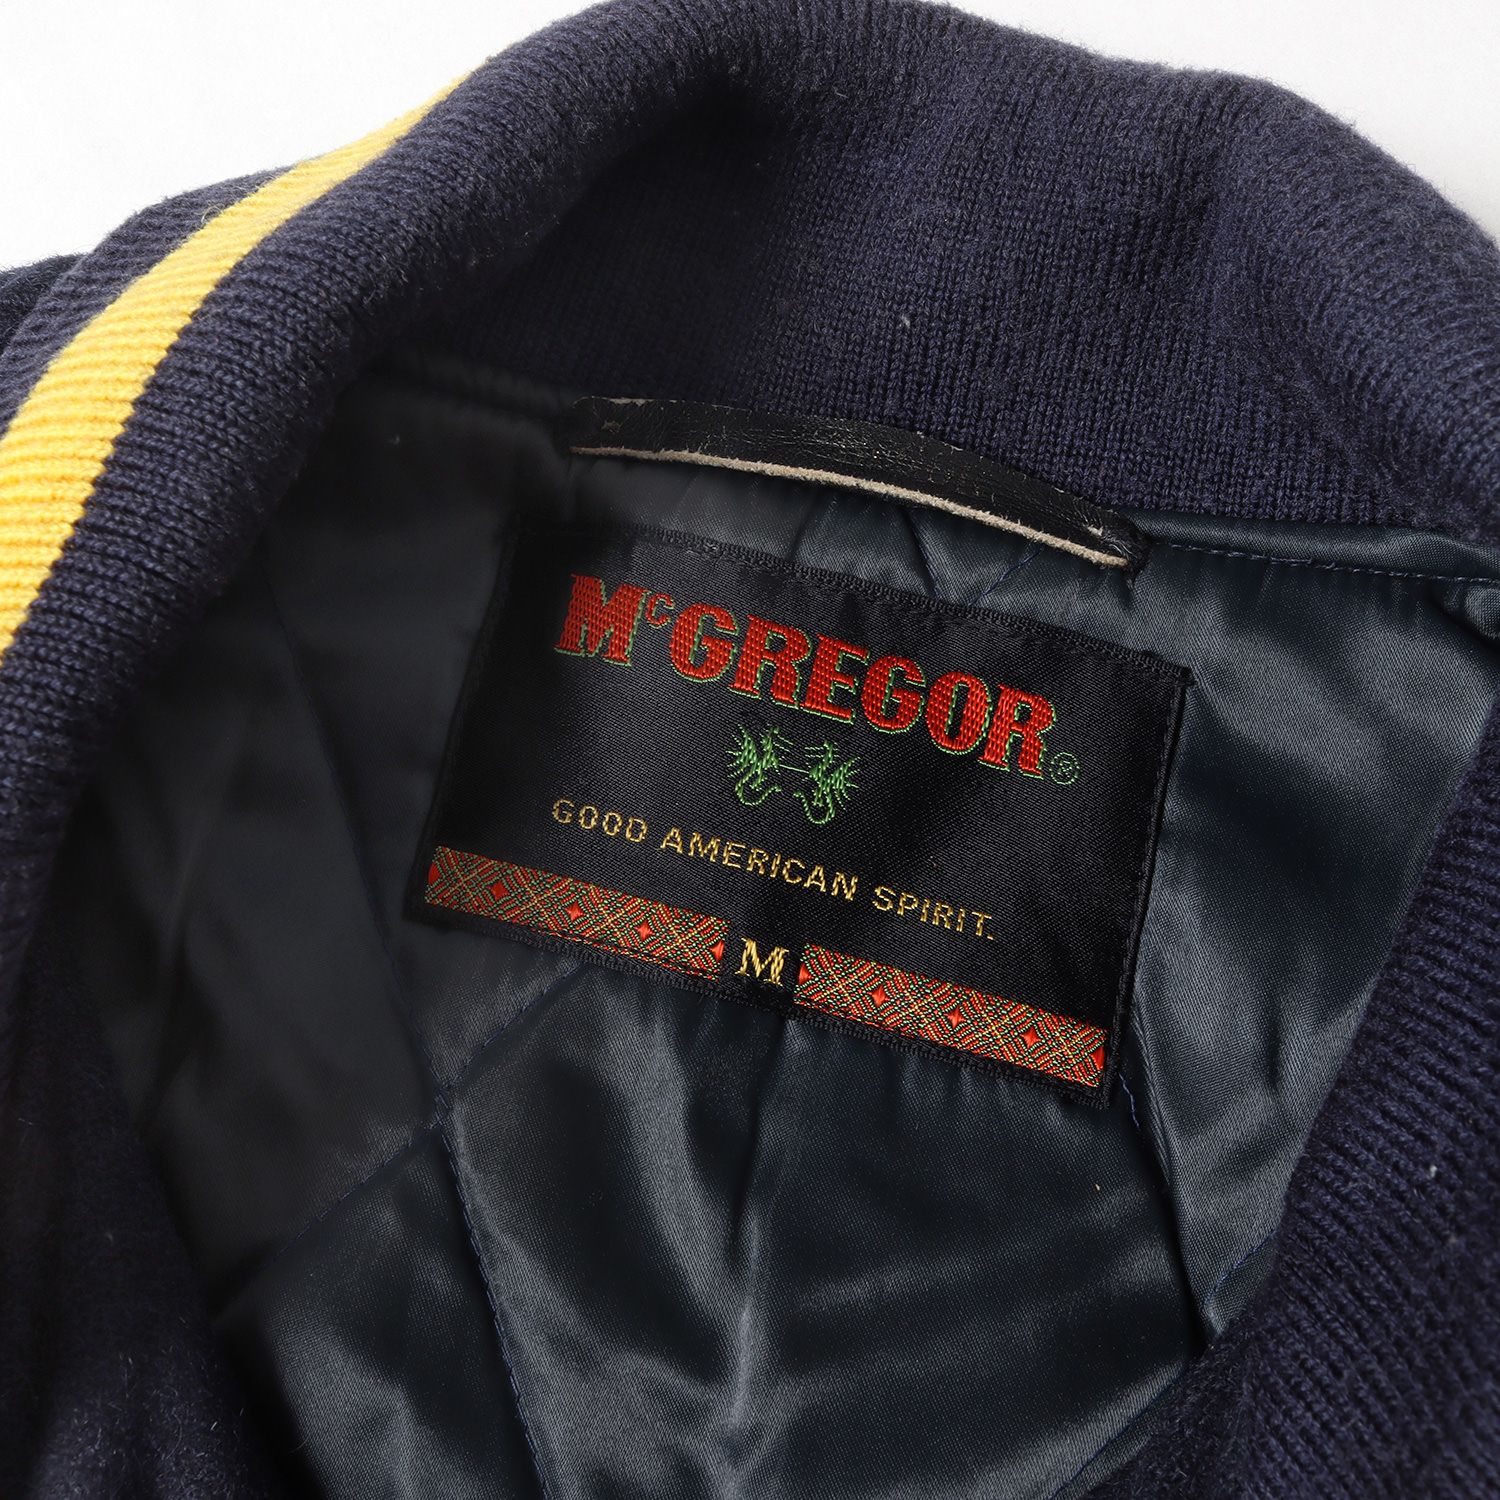 McGREGOR マクレガー ジャケット サイズ:M 80s スタジャン ブランド